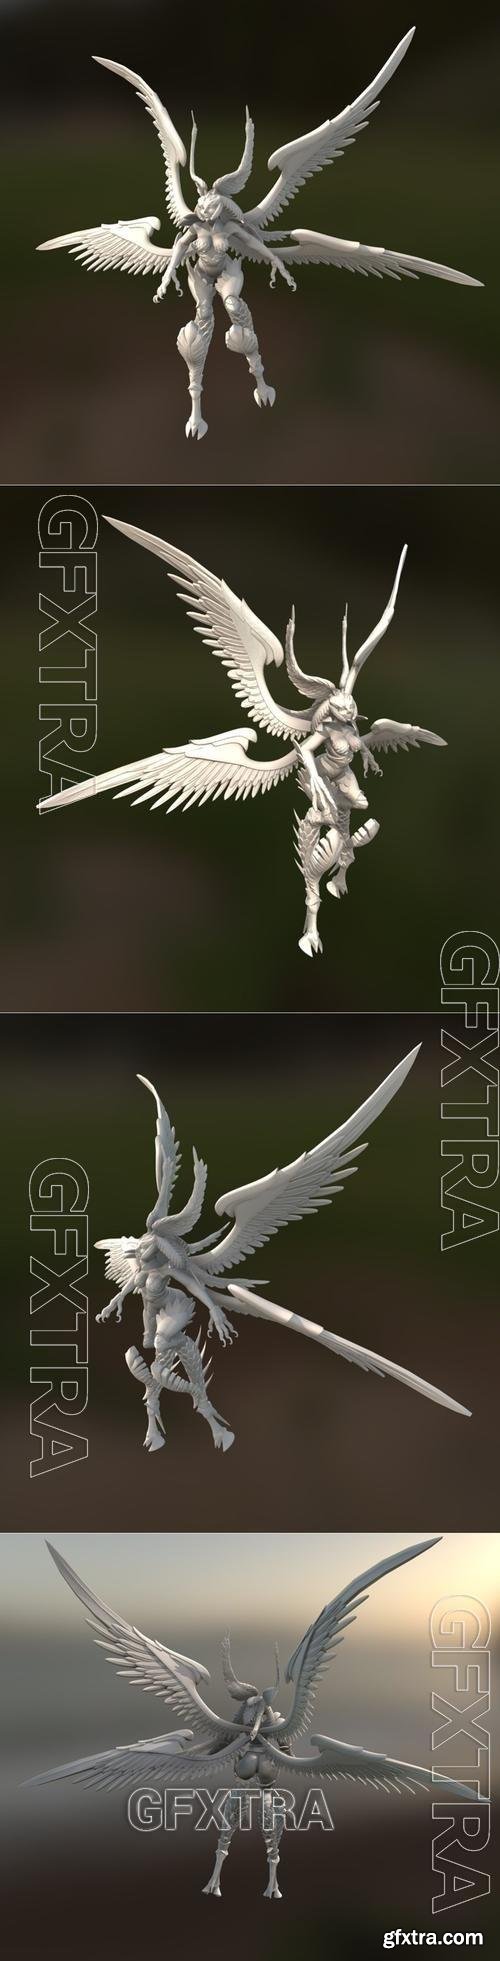 Garuda Final Fantasy XIV 3D